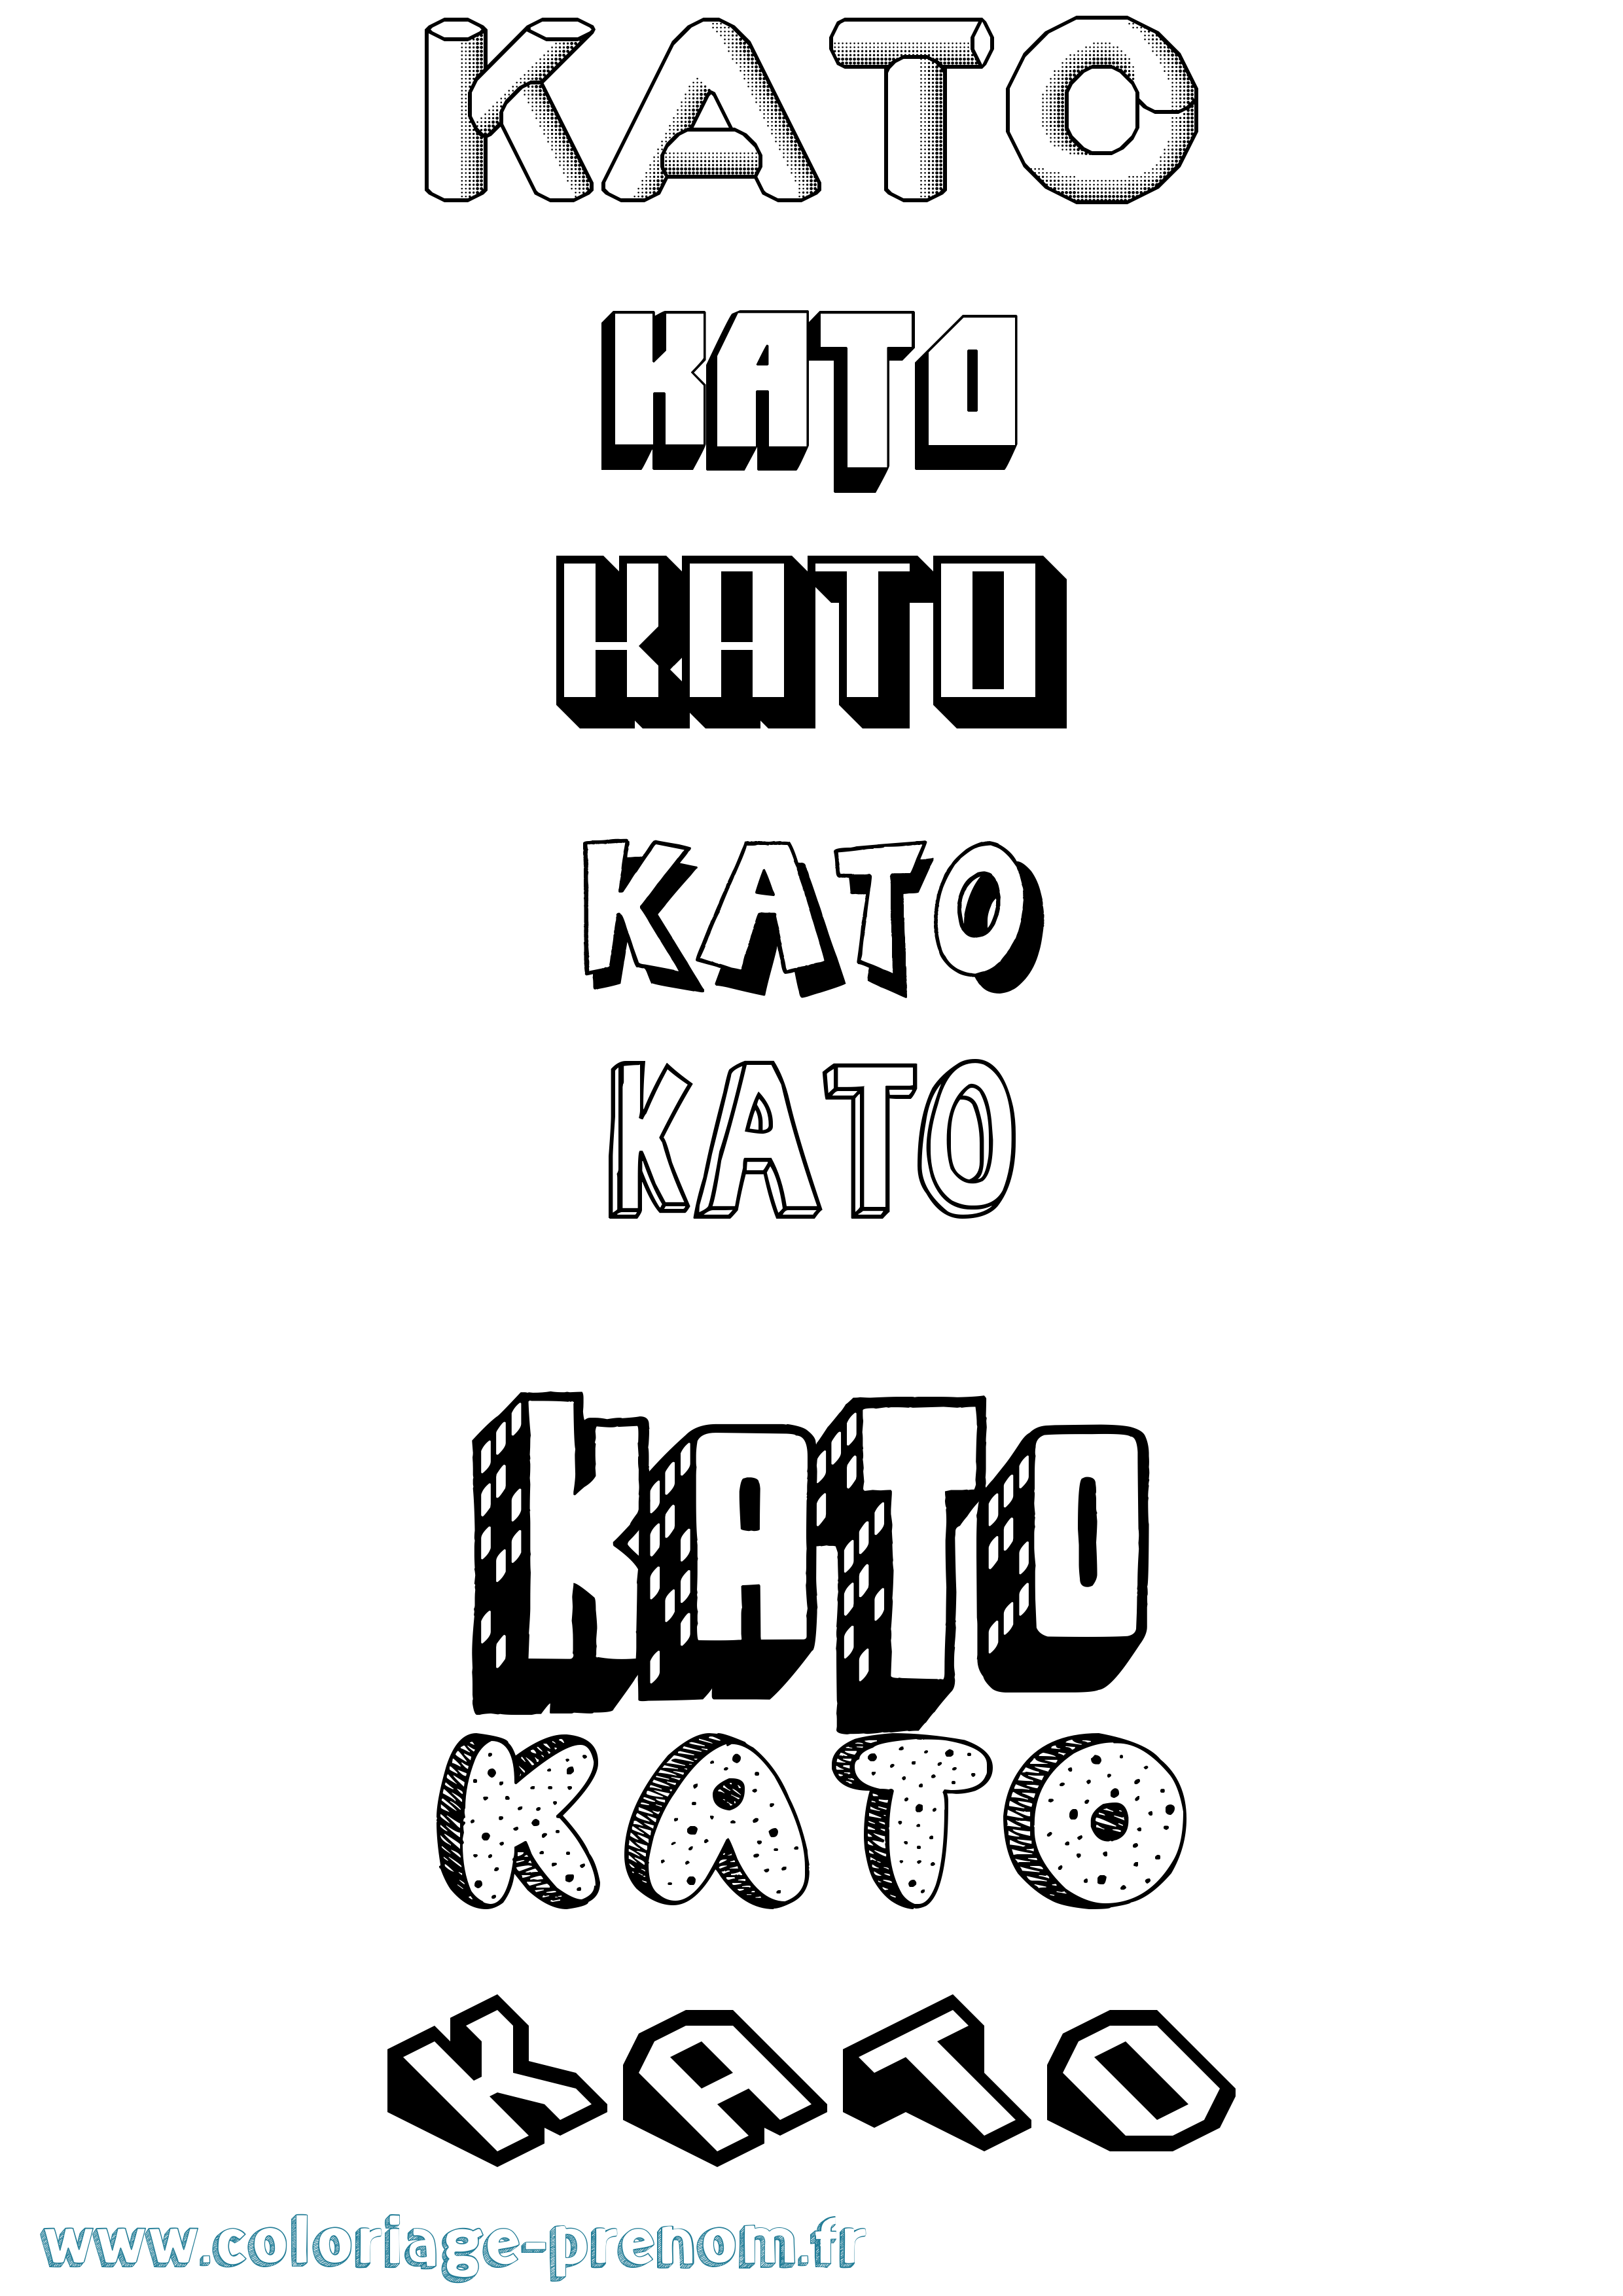 Coloriage prénom Kato Effet 3D